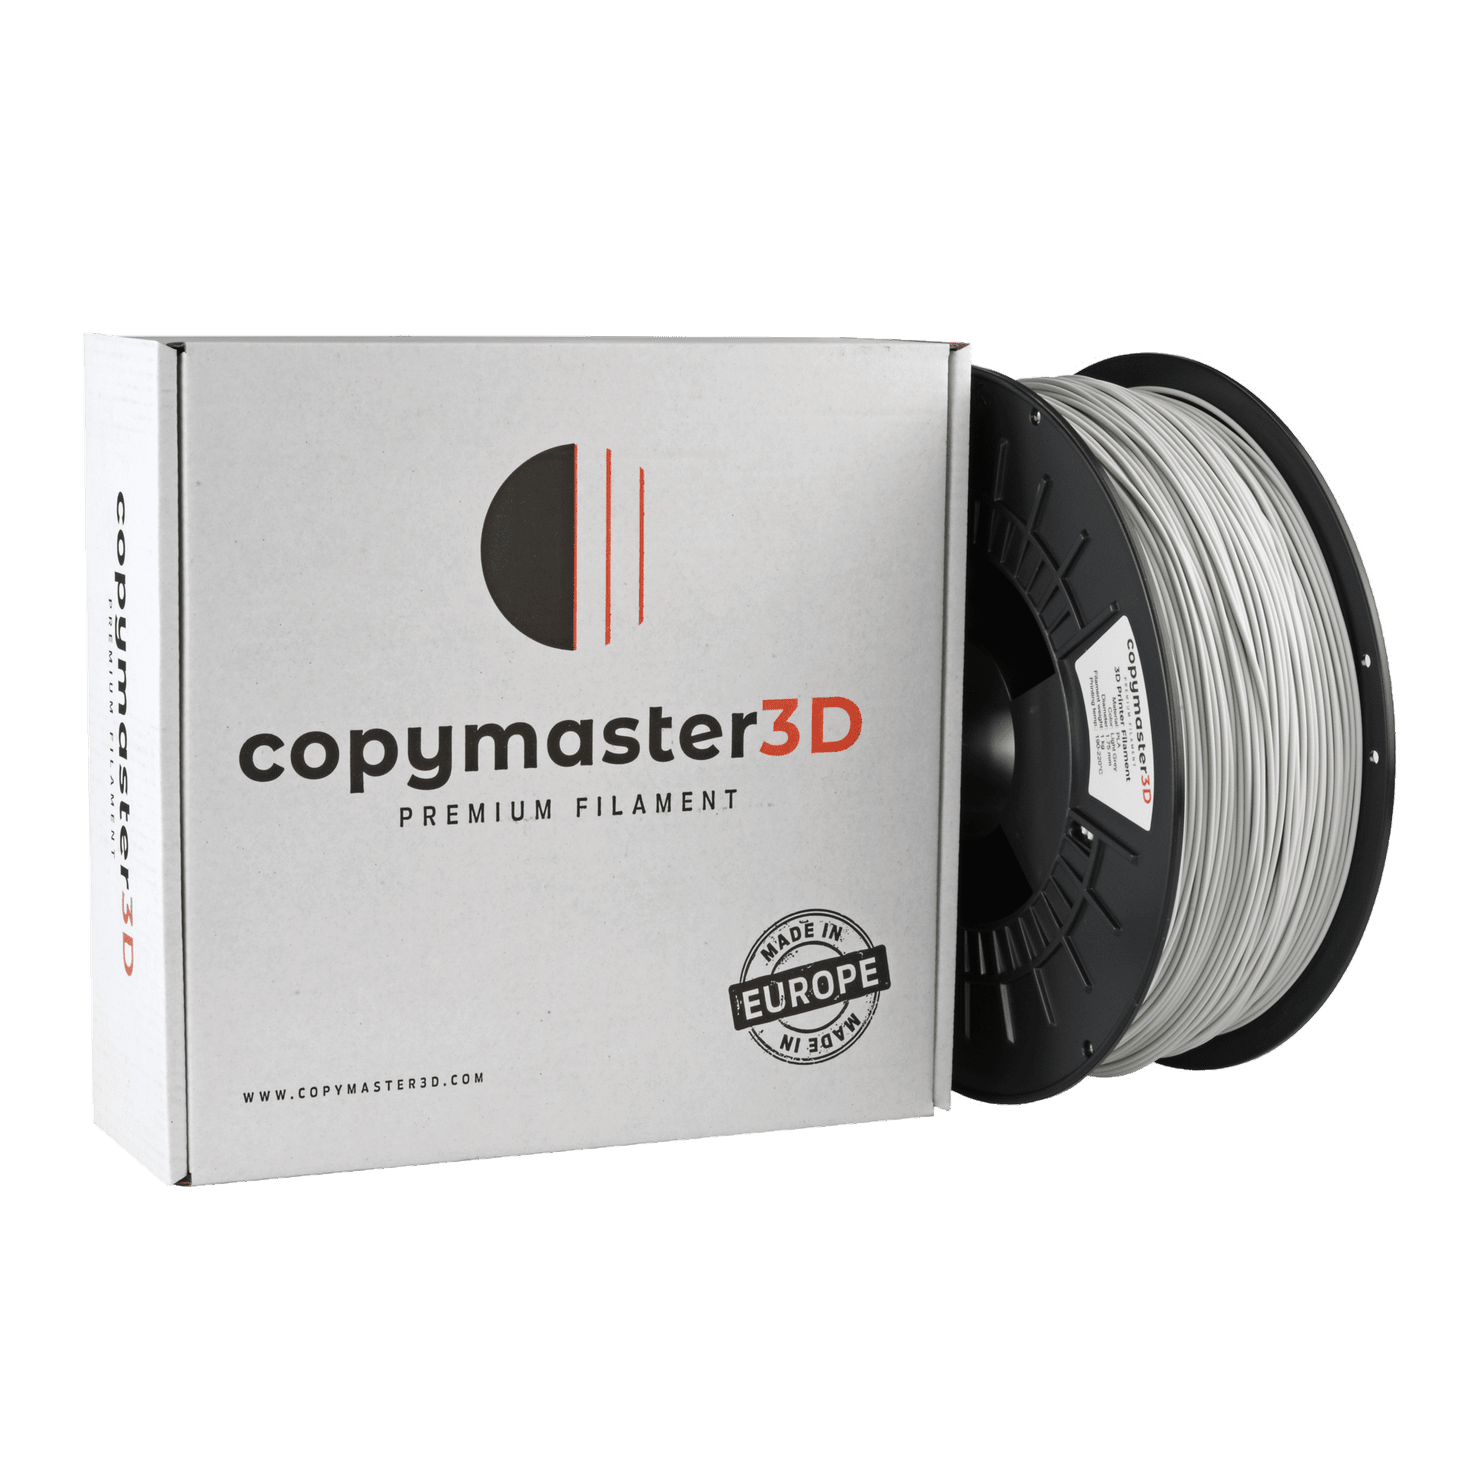 Copymaster3D Premium PLA Filament 1.75mm 1KG Light Grey